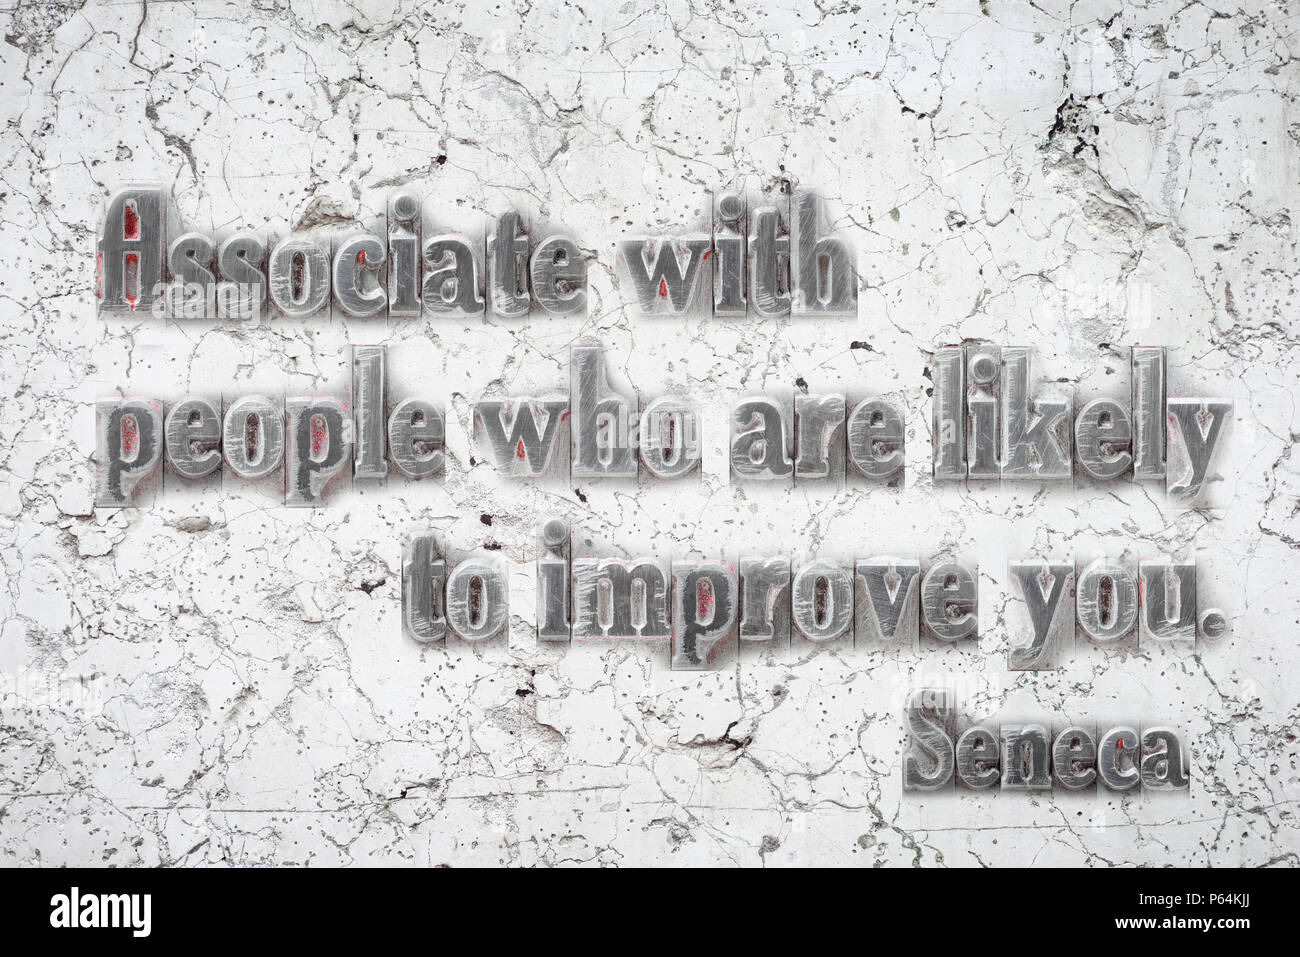 Mit Menschen, die wahrscheinlich sind Sie - alten römischen Philosophen Seneca Zitat auf weißem Marmor Wand zu verbessern Verknüpfen Stockfoto